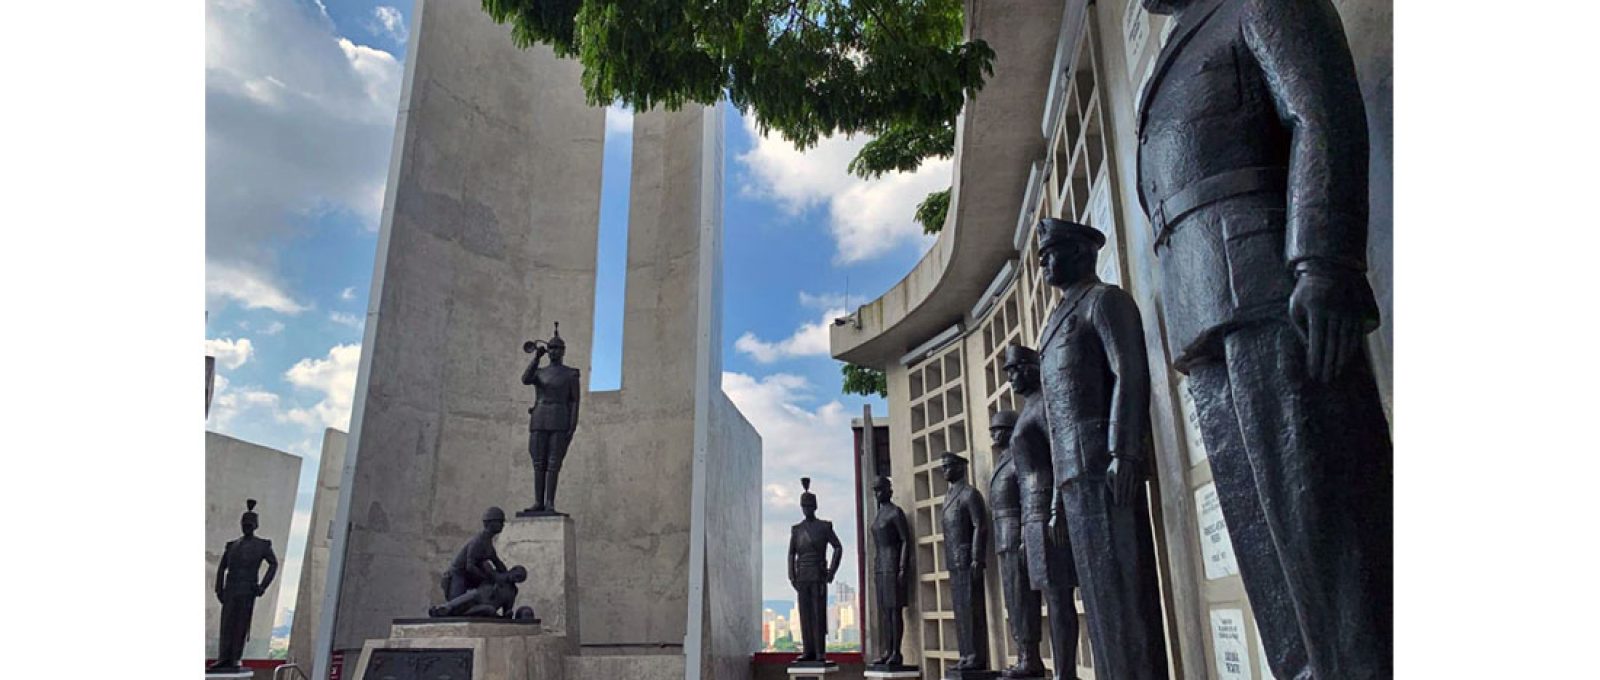 Praça central do Mausoléu da Polícia Militar do Estado de São Paulo, PMESP (Acervo do autor).